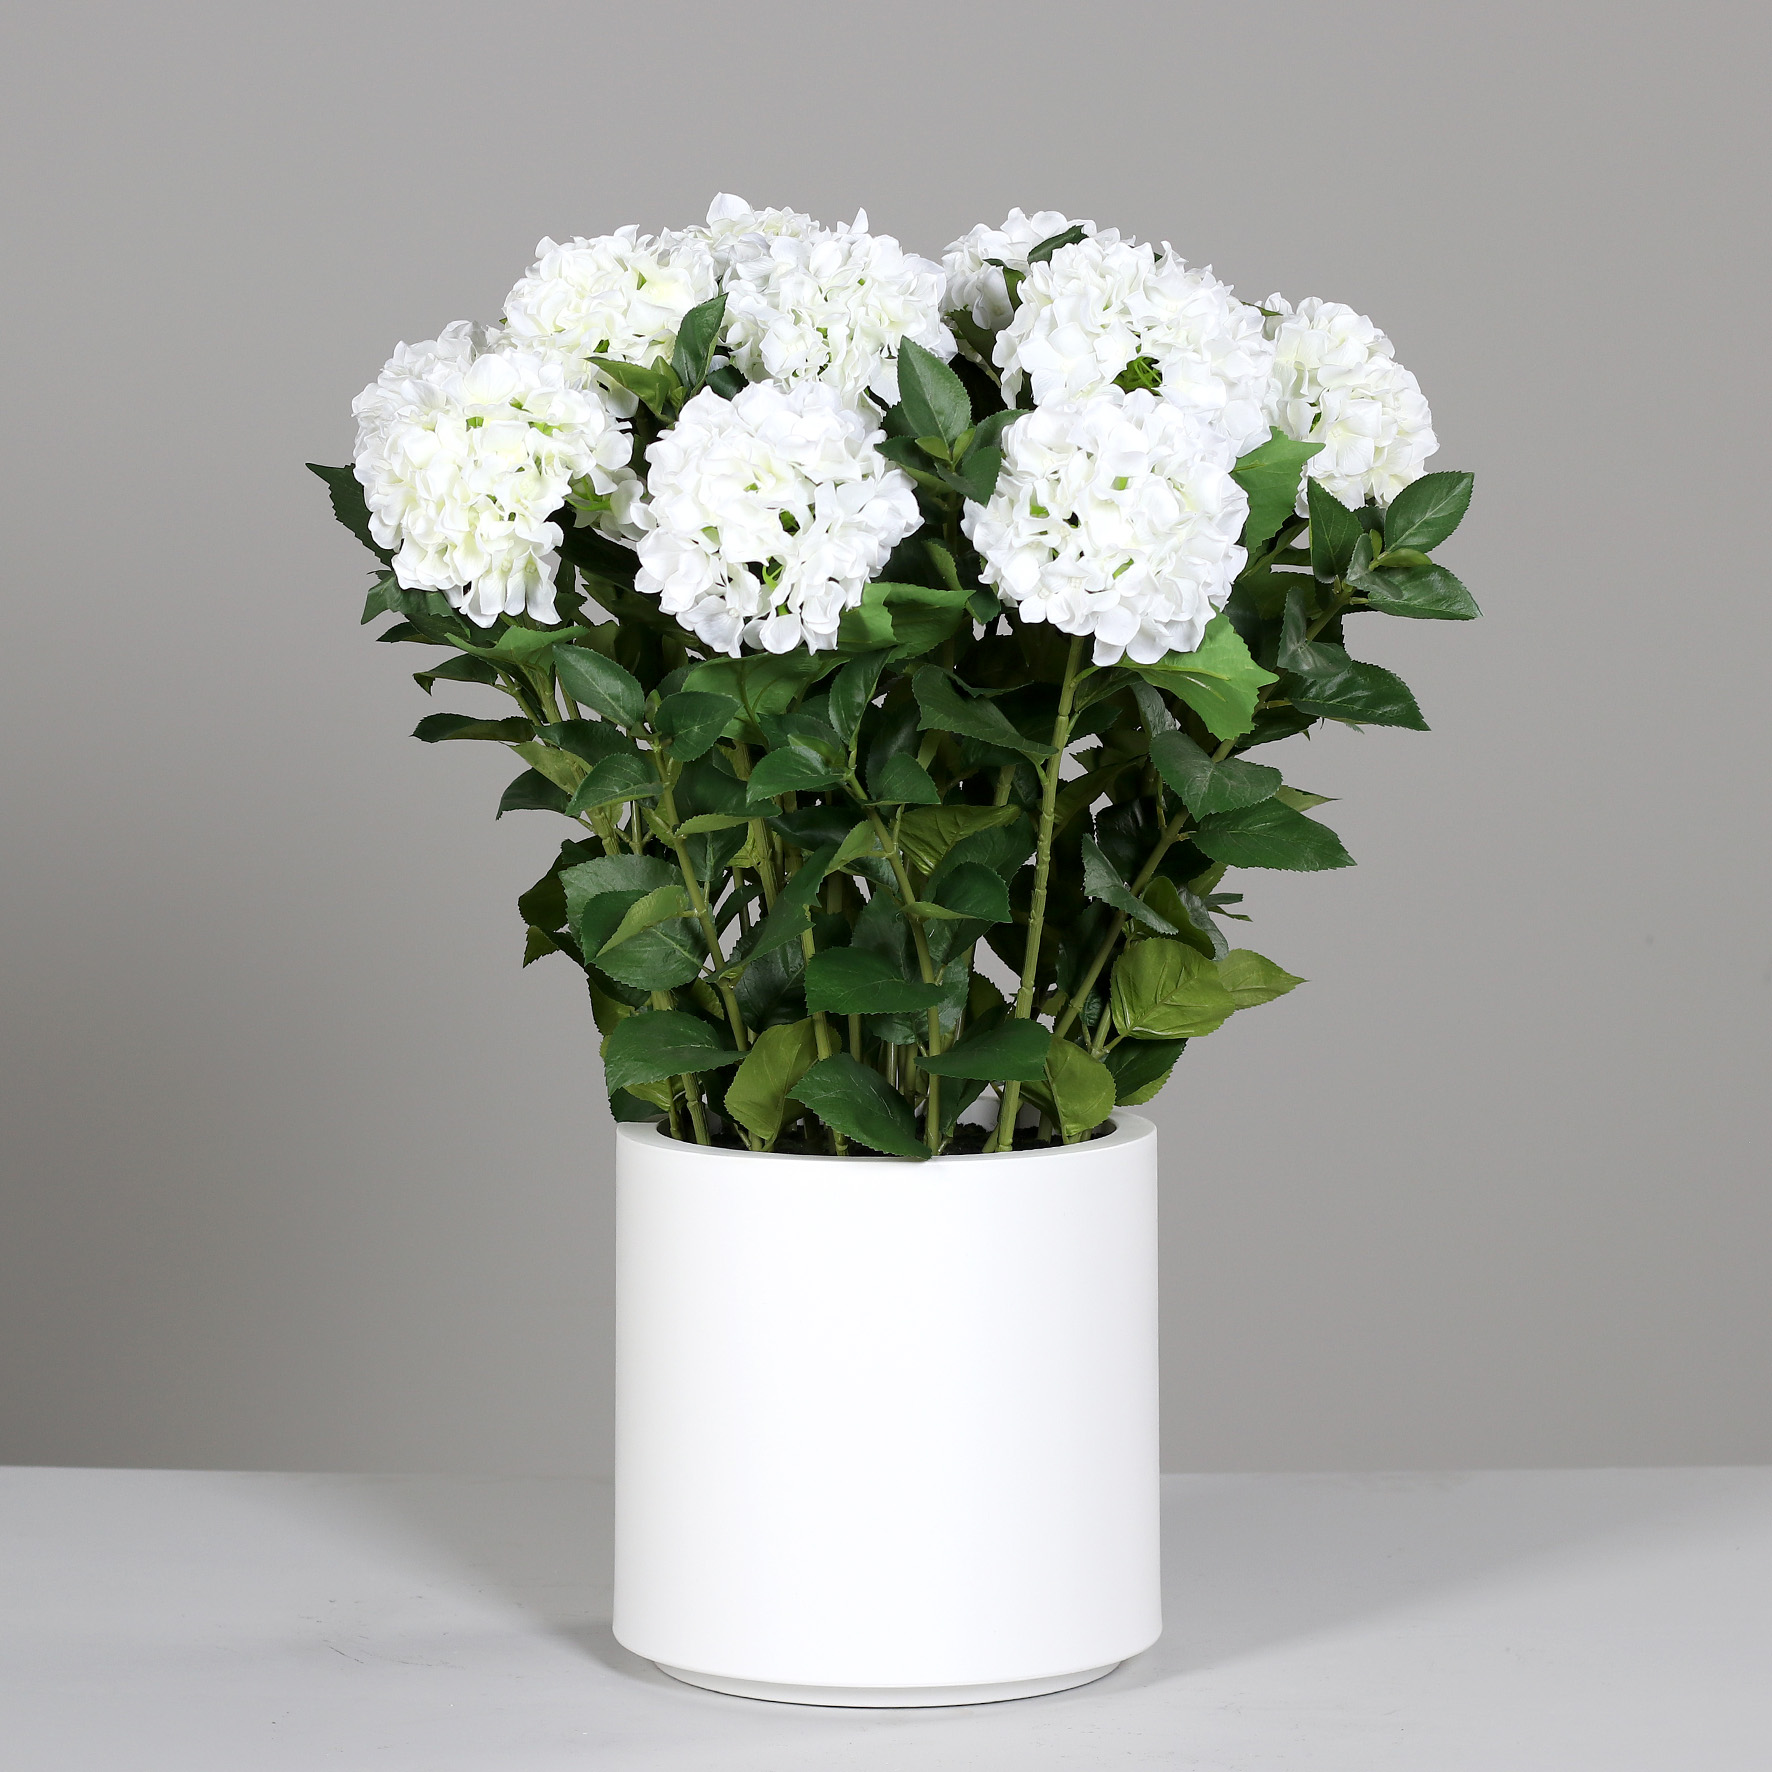 Hortensientopf 90x75cm weiß im weißen Topf DP künstliche Hortensie Blumen Pflanzen Kunstpflanzen Kunstblumen